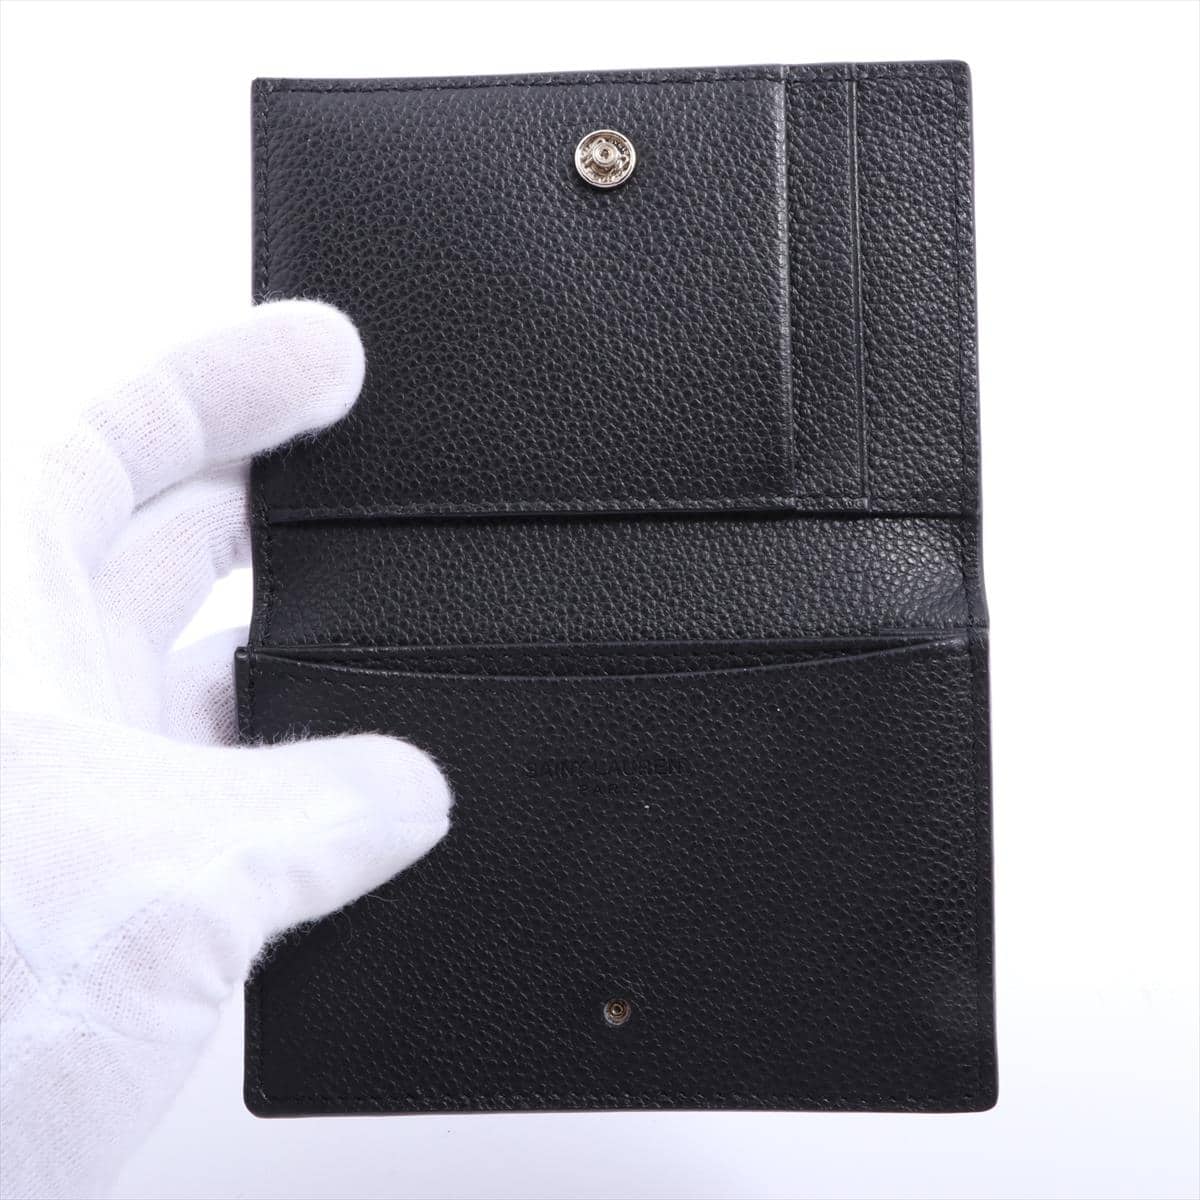 Saint Laurent Paris Leather Card case Black